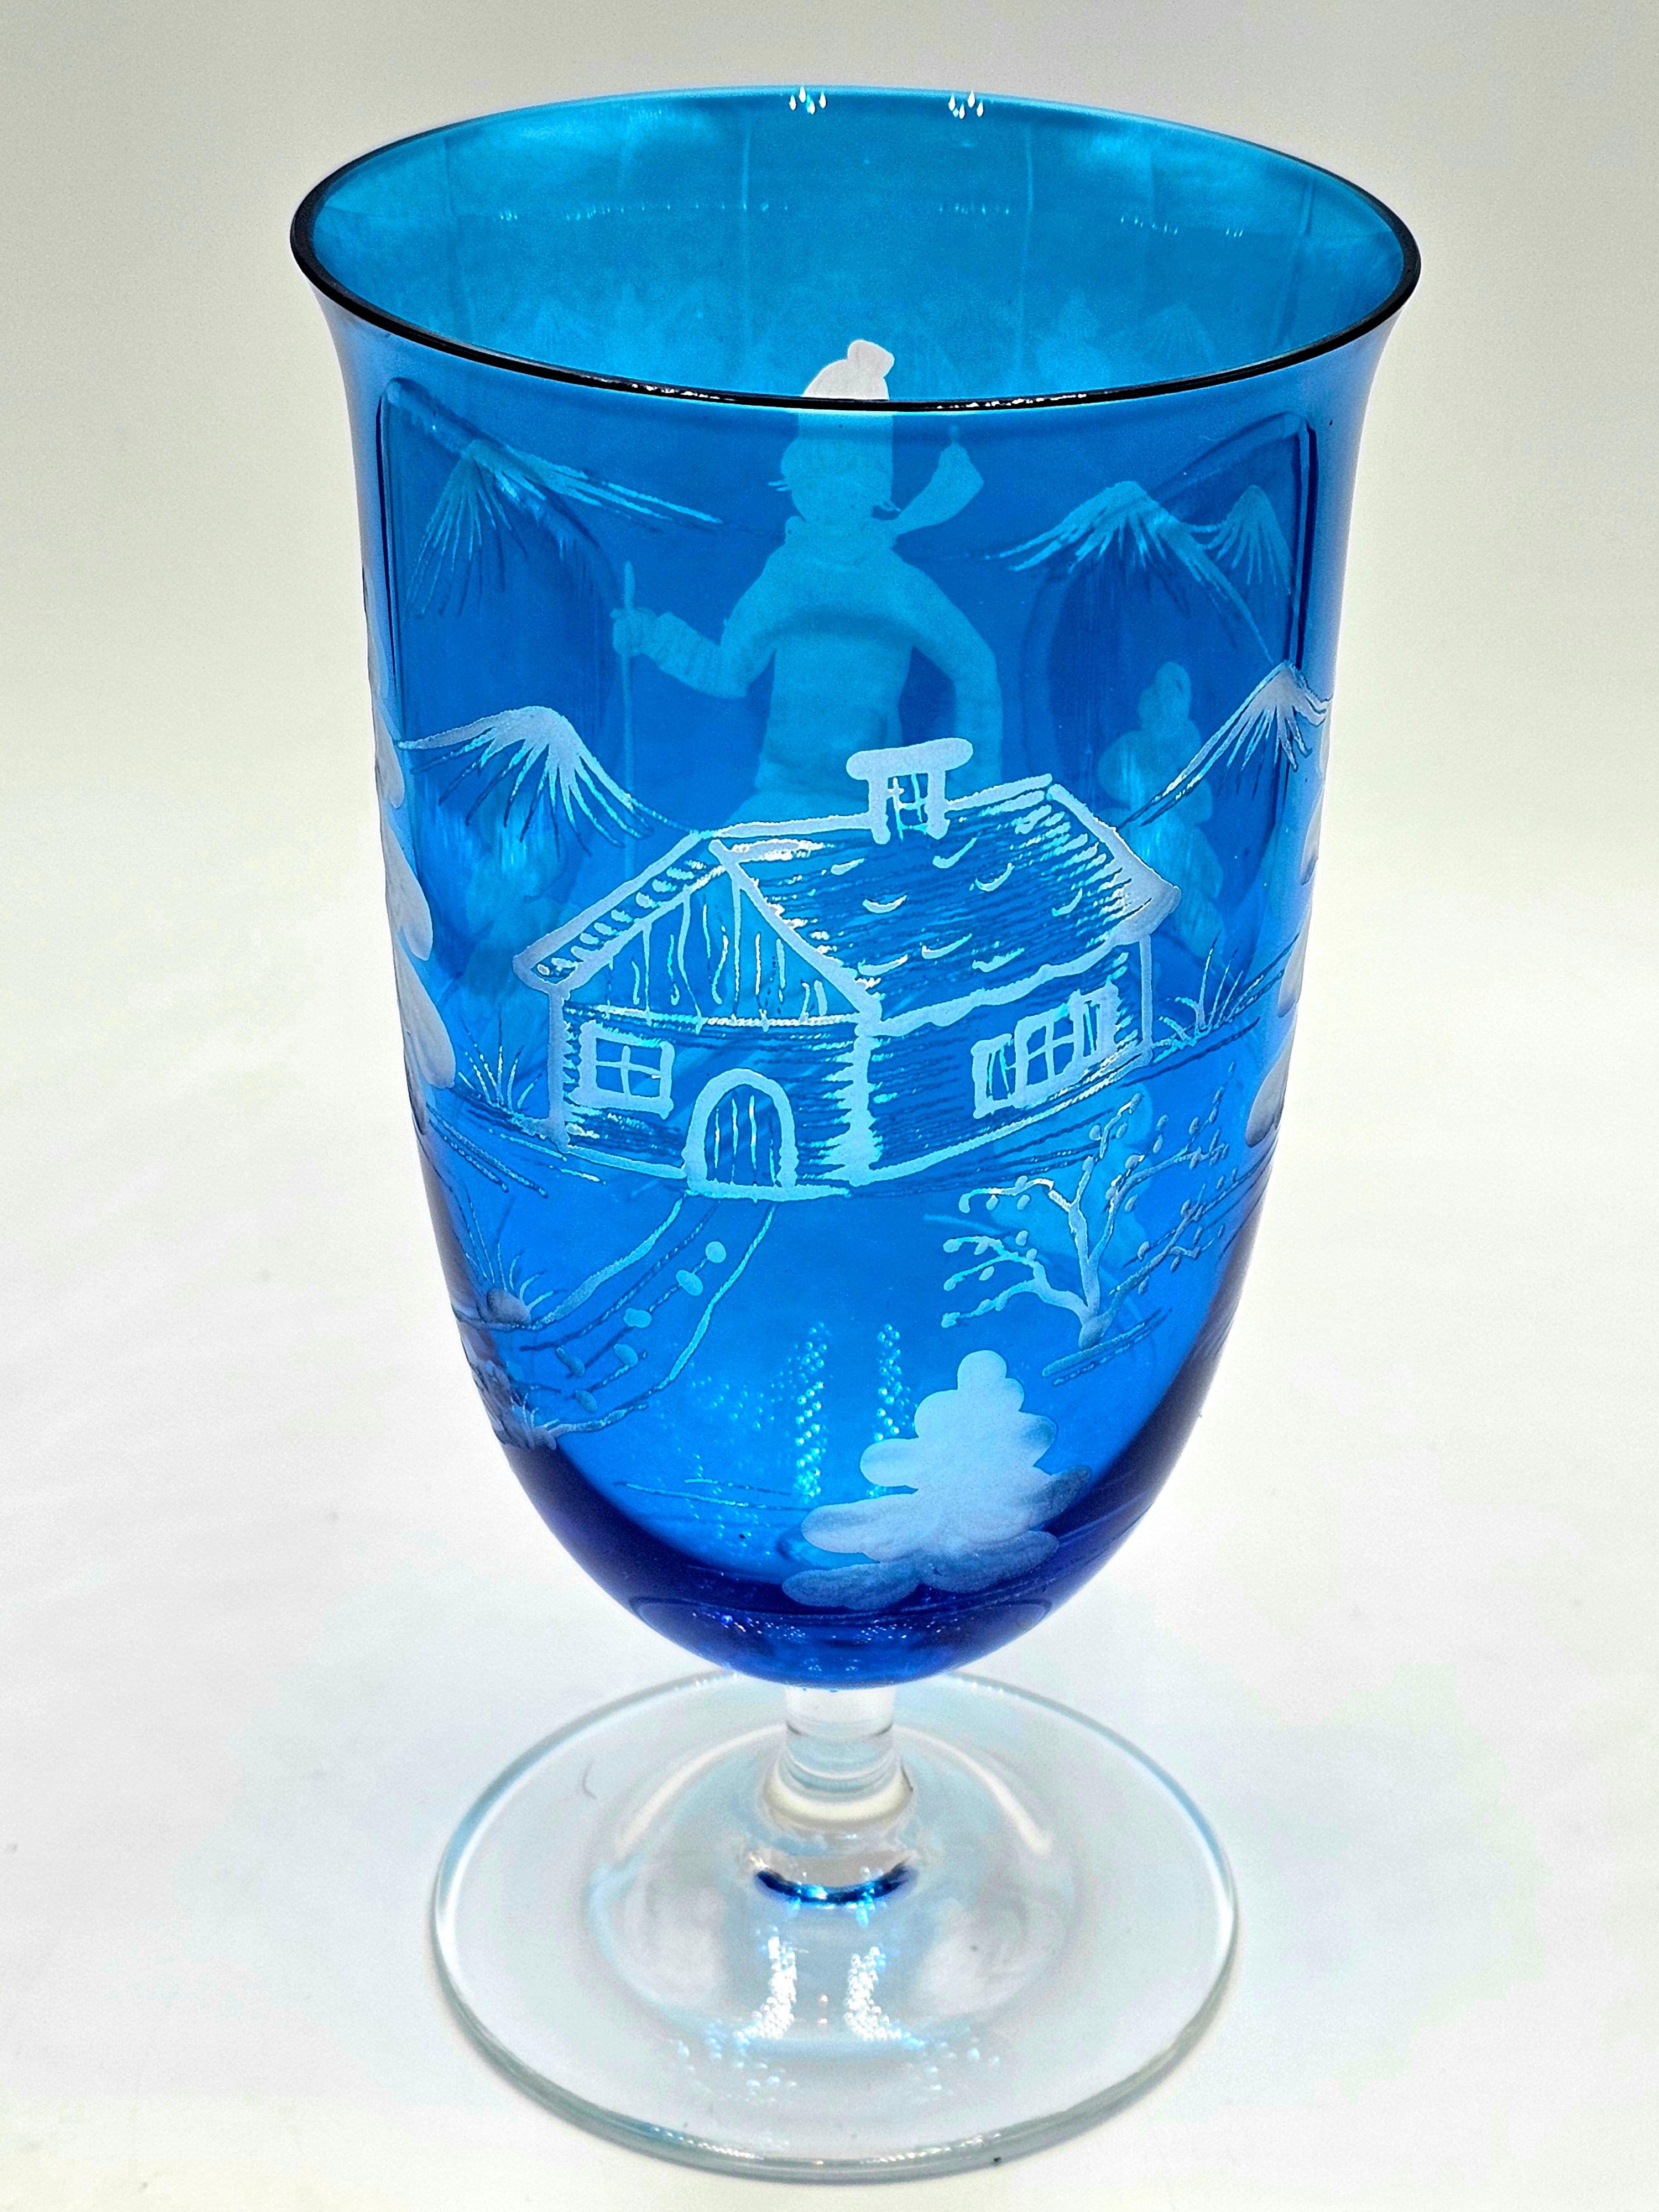 Ensemble de six verres en cristal soufflé à la bouche, de couleur bleue, avec un décor de skieur taillé à la main sur tout le pourtour. Le décor est de style champêtre, avec un skieur, des arbres, des montagnes et un chalet sur toute la vitre. Une